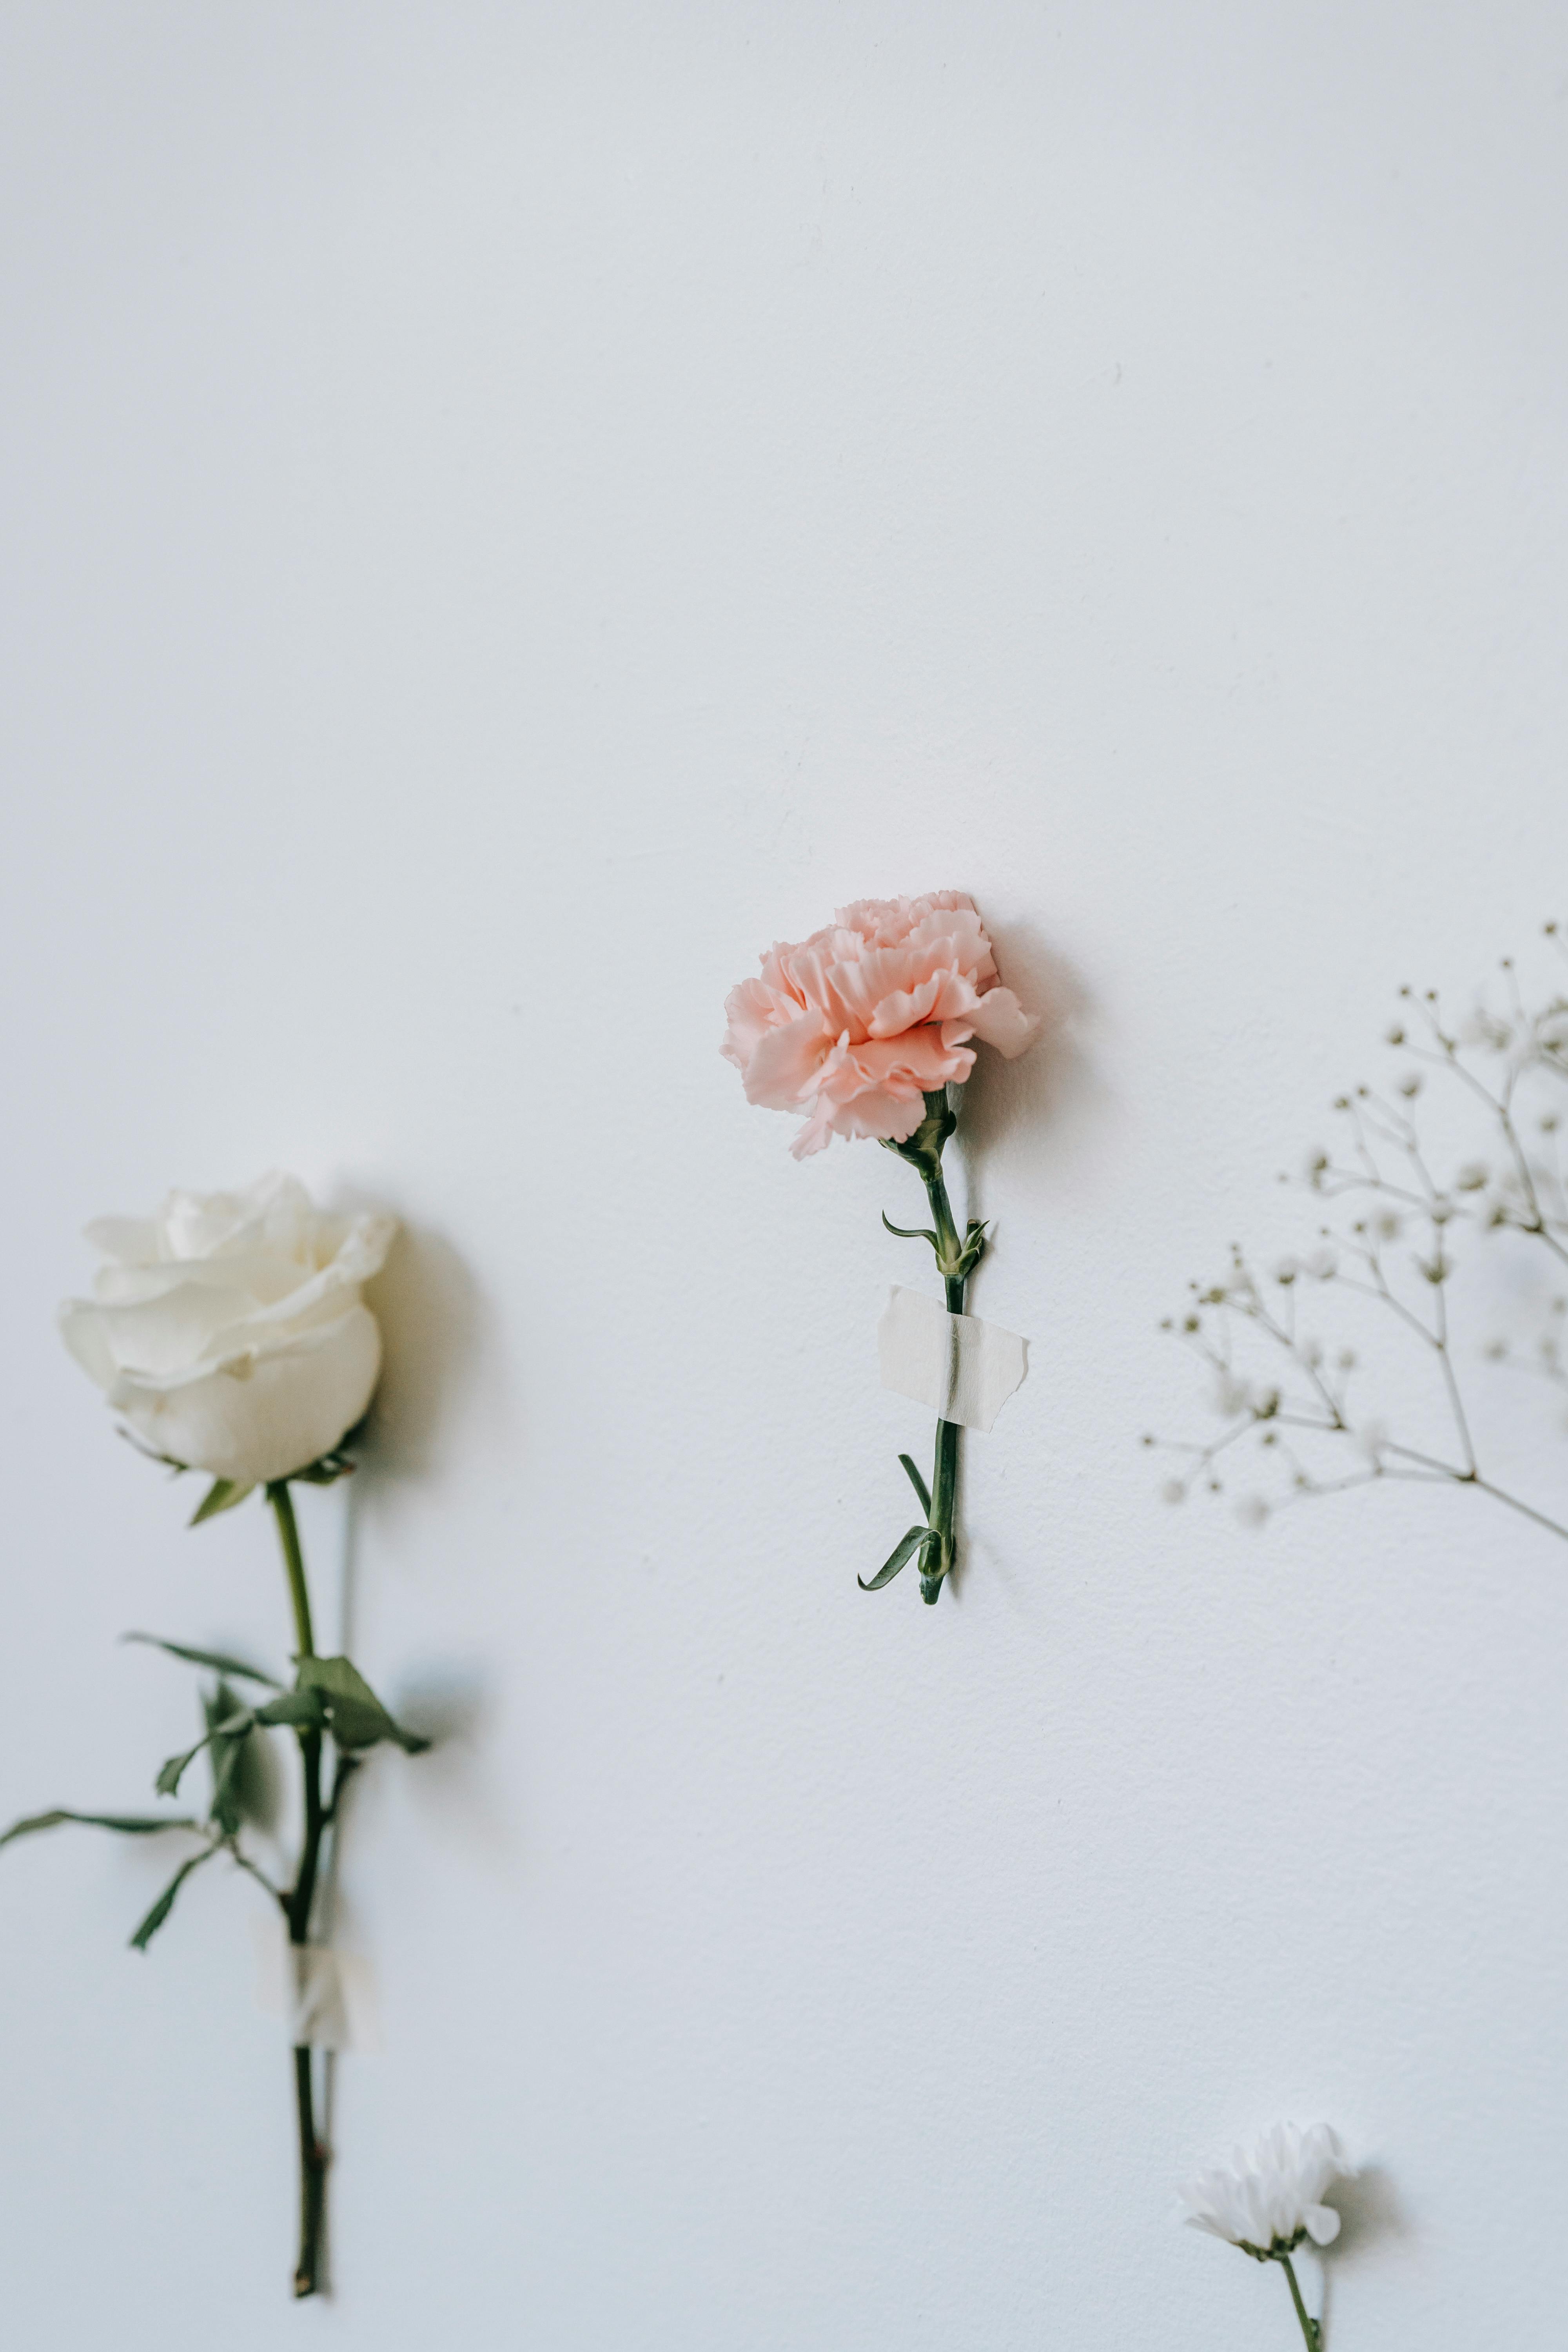 Muốn có những bức ảnh hoa đẹp nhưng không muốn bị phân tán bởi nền ảnh đa sắc tố? Chúng tôi cung cấp những bức ảnh hoa tách biệt trên nền trắng để bạn có thể tập trung vào vẻ đẹp của chúng. Bạn sẽ bị say đắm trước sự tuyệt vời của chúng đấy!